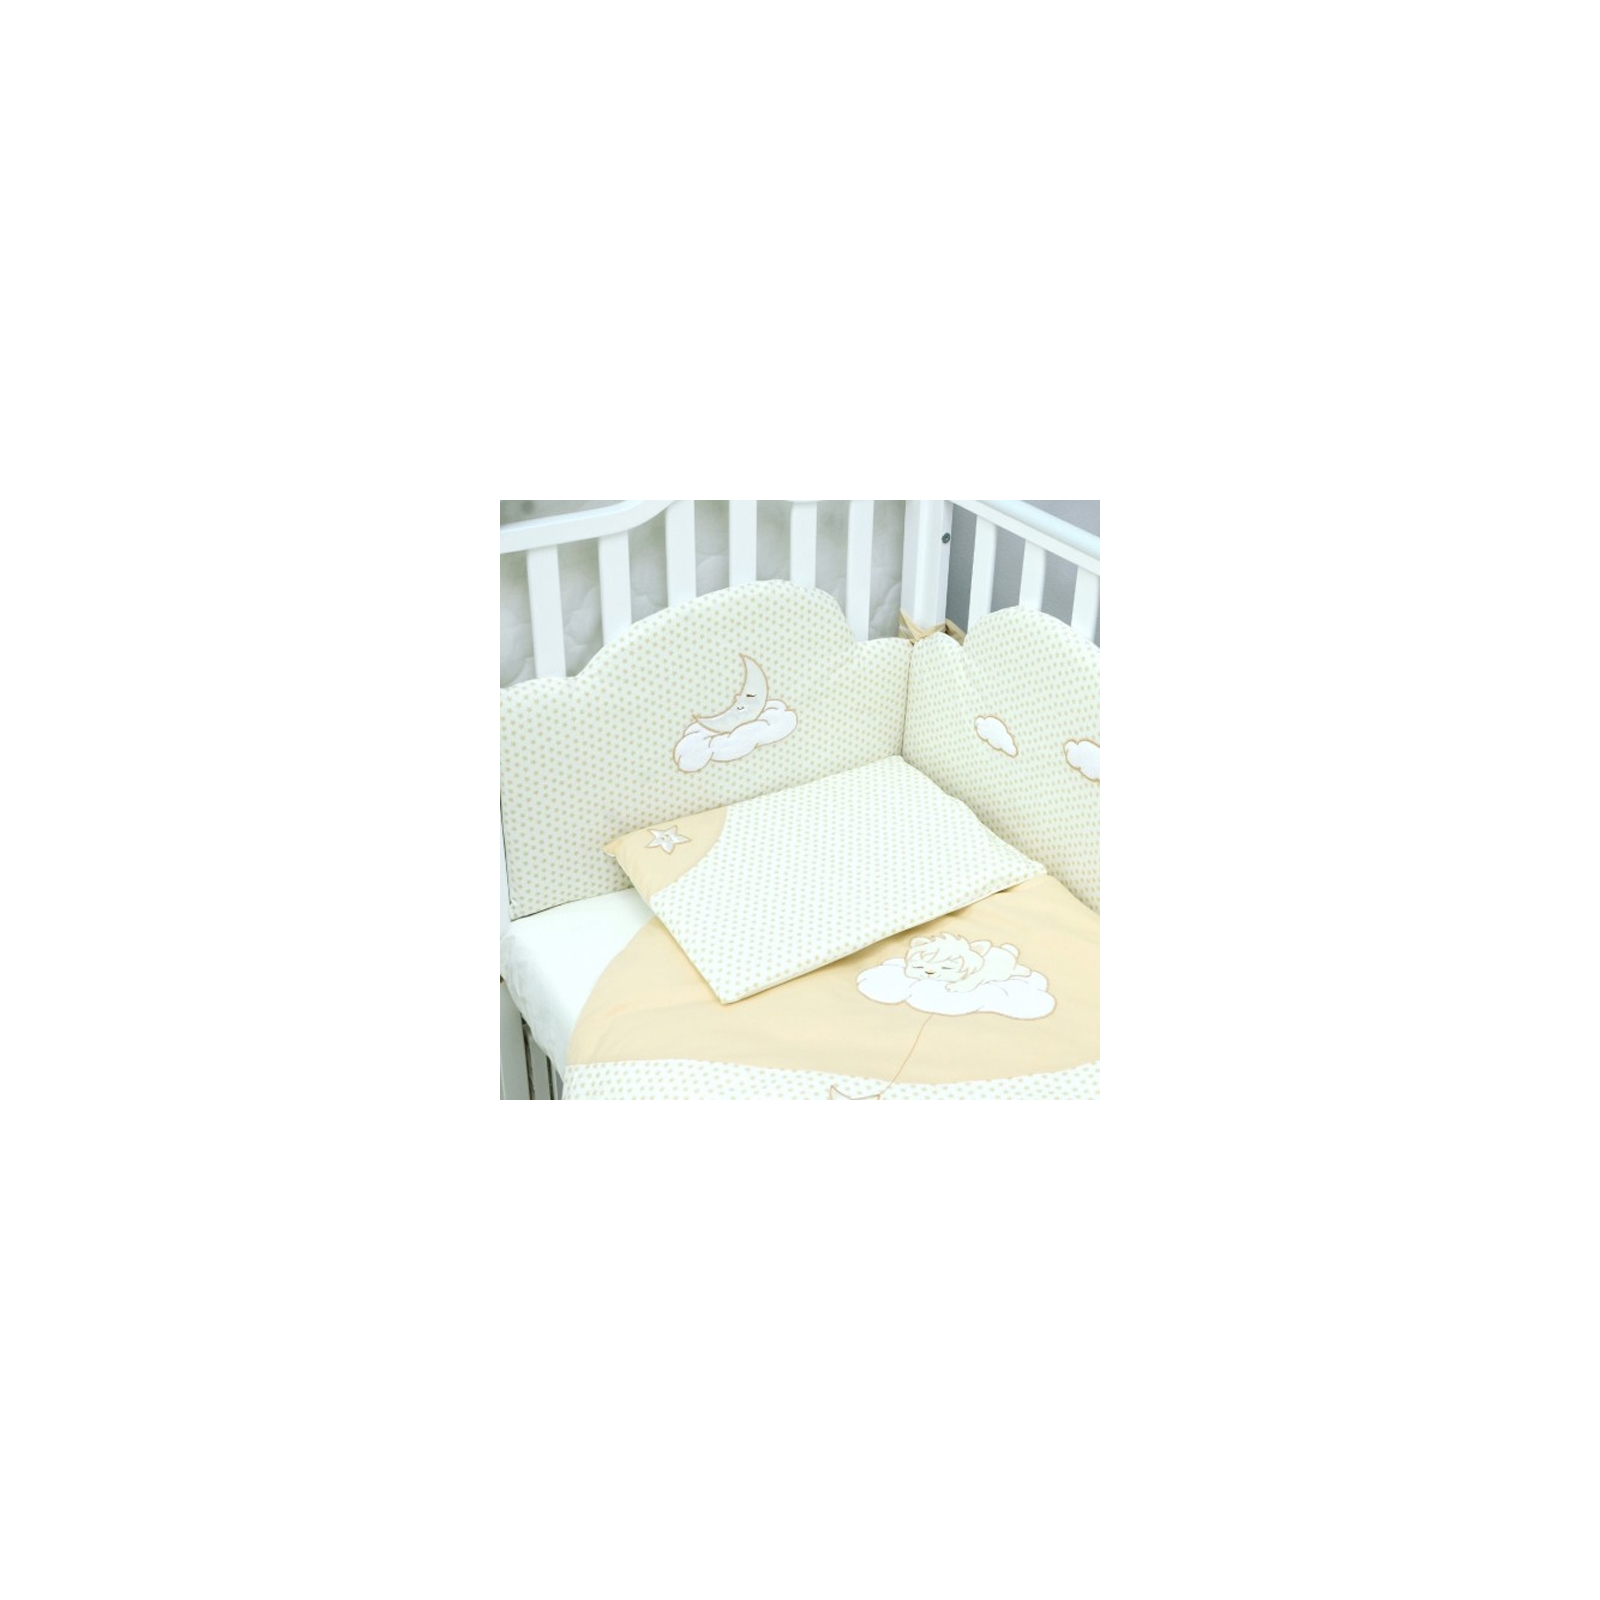 Детский постельный набор Верес Сменный Sleepyhead beige (3 ед.) (153.2.25)